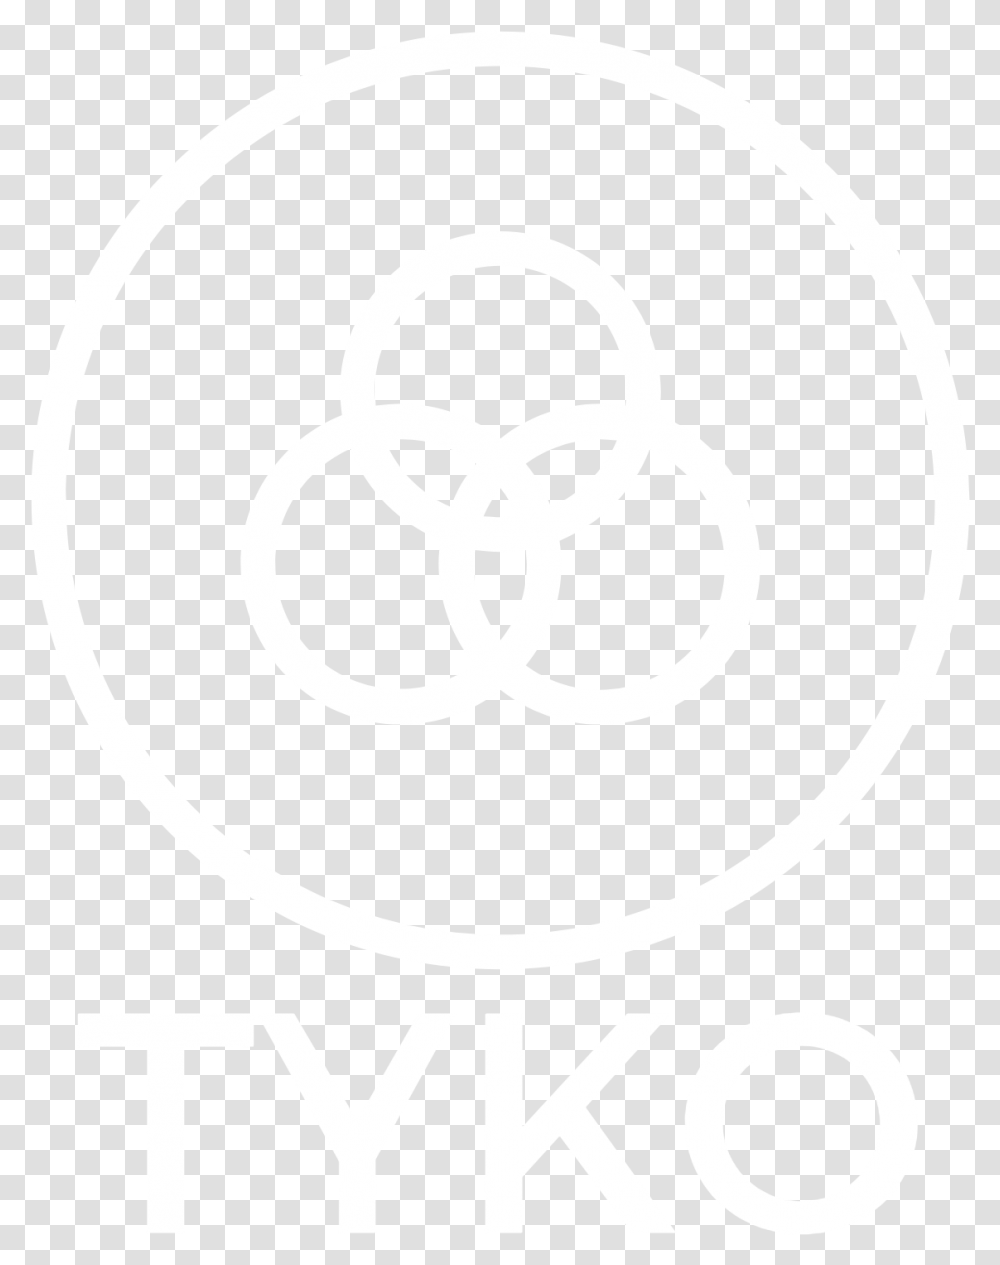 John Bonham Logo, Stencil, Emblem Transparent Png